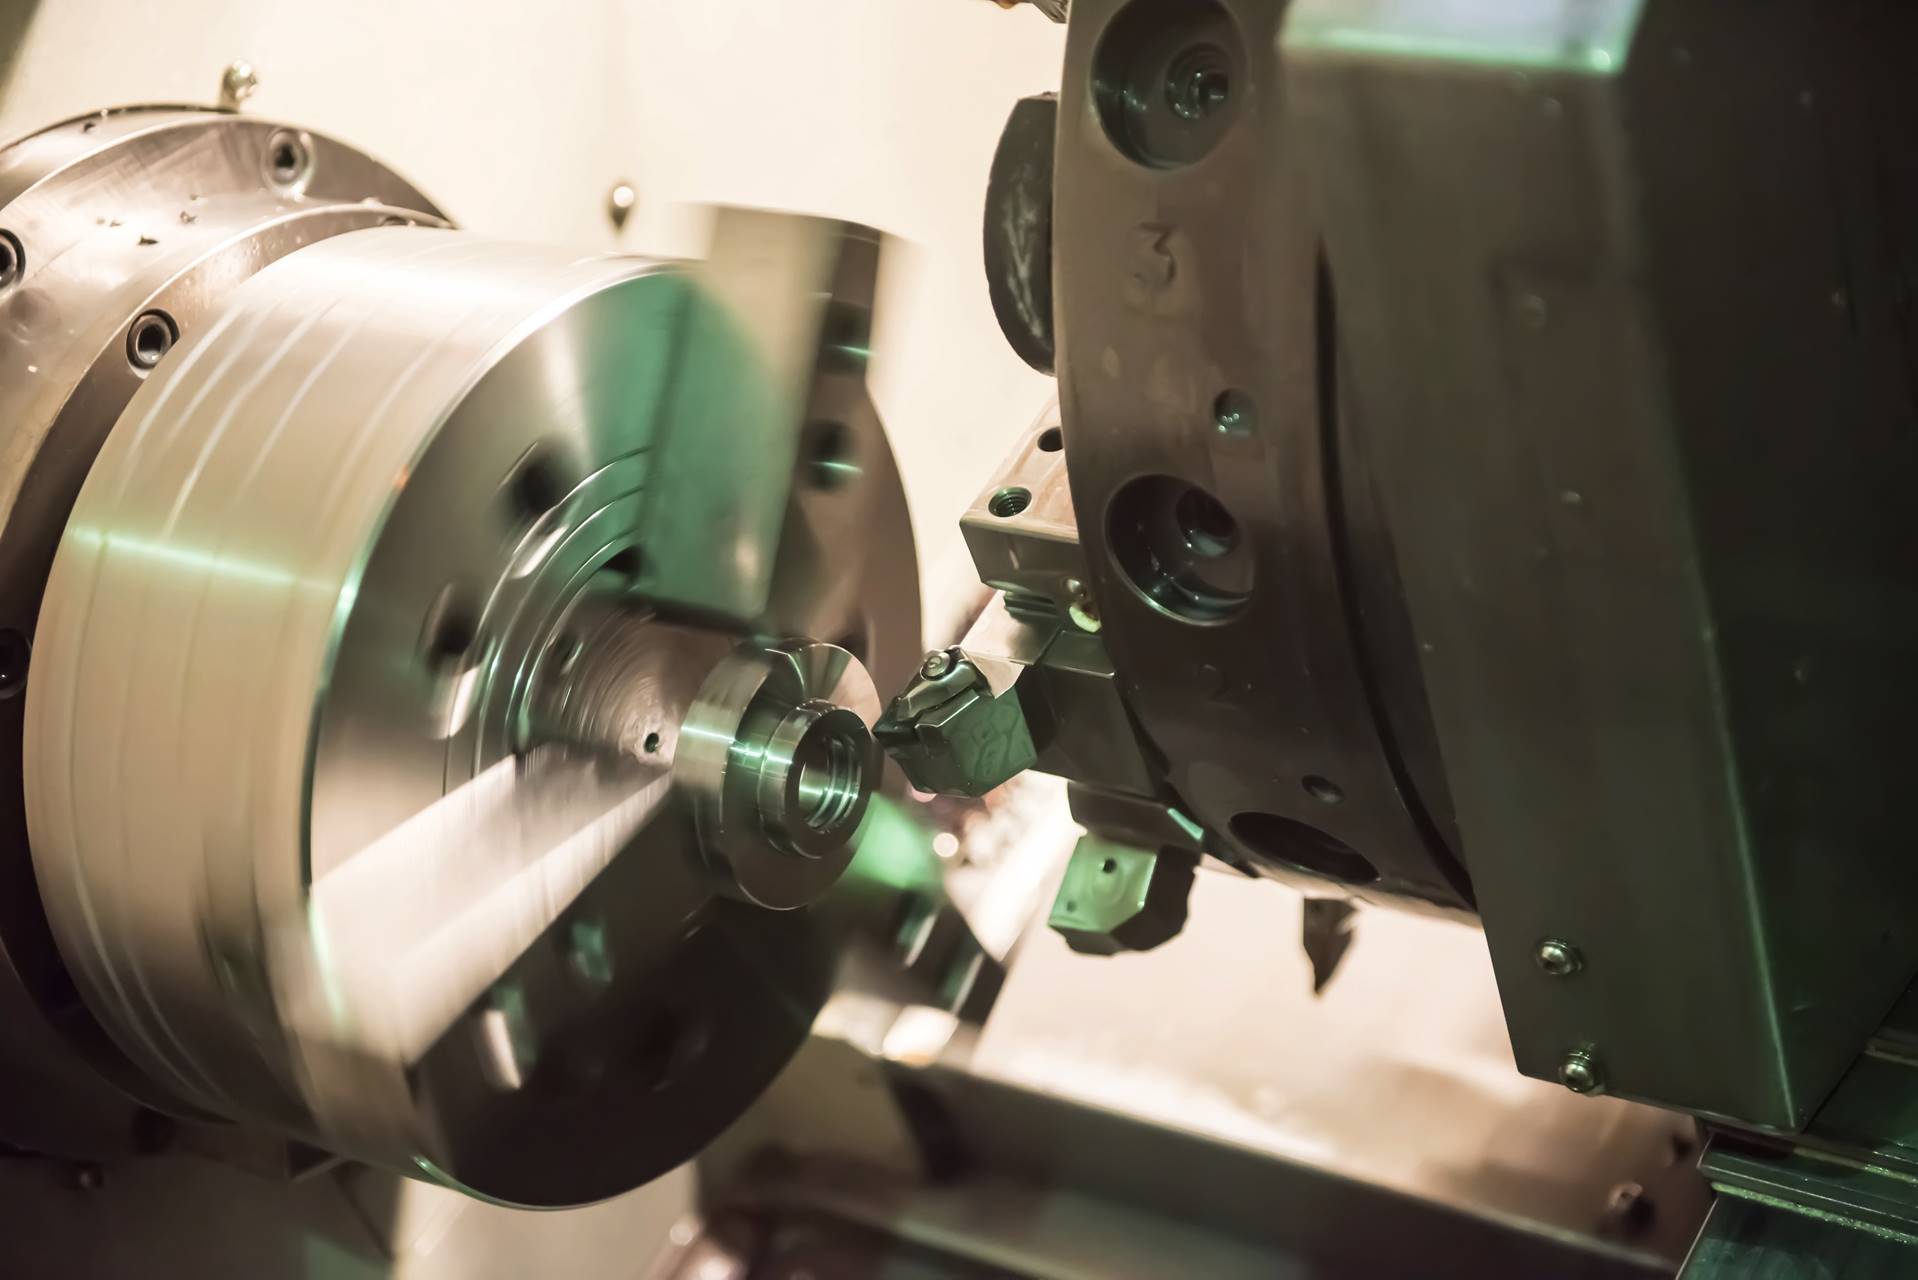 Gear grinder – A modern technology